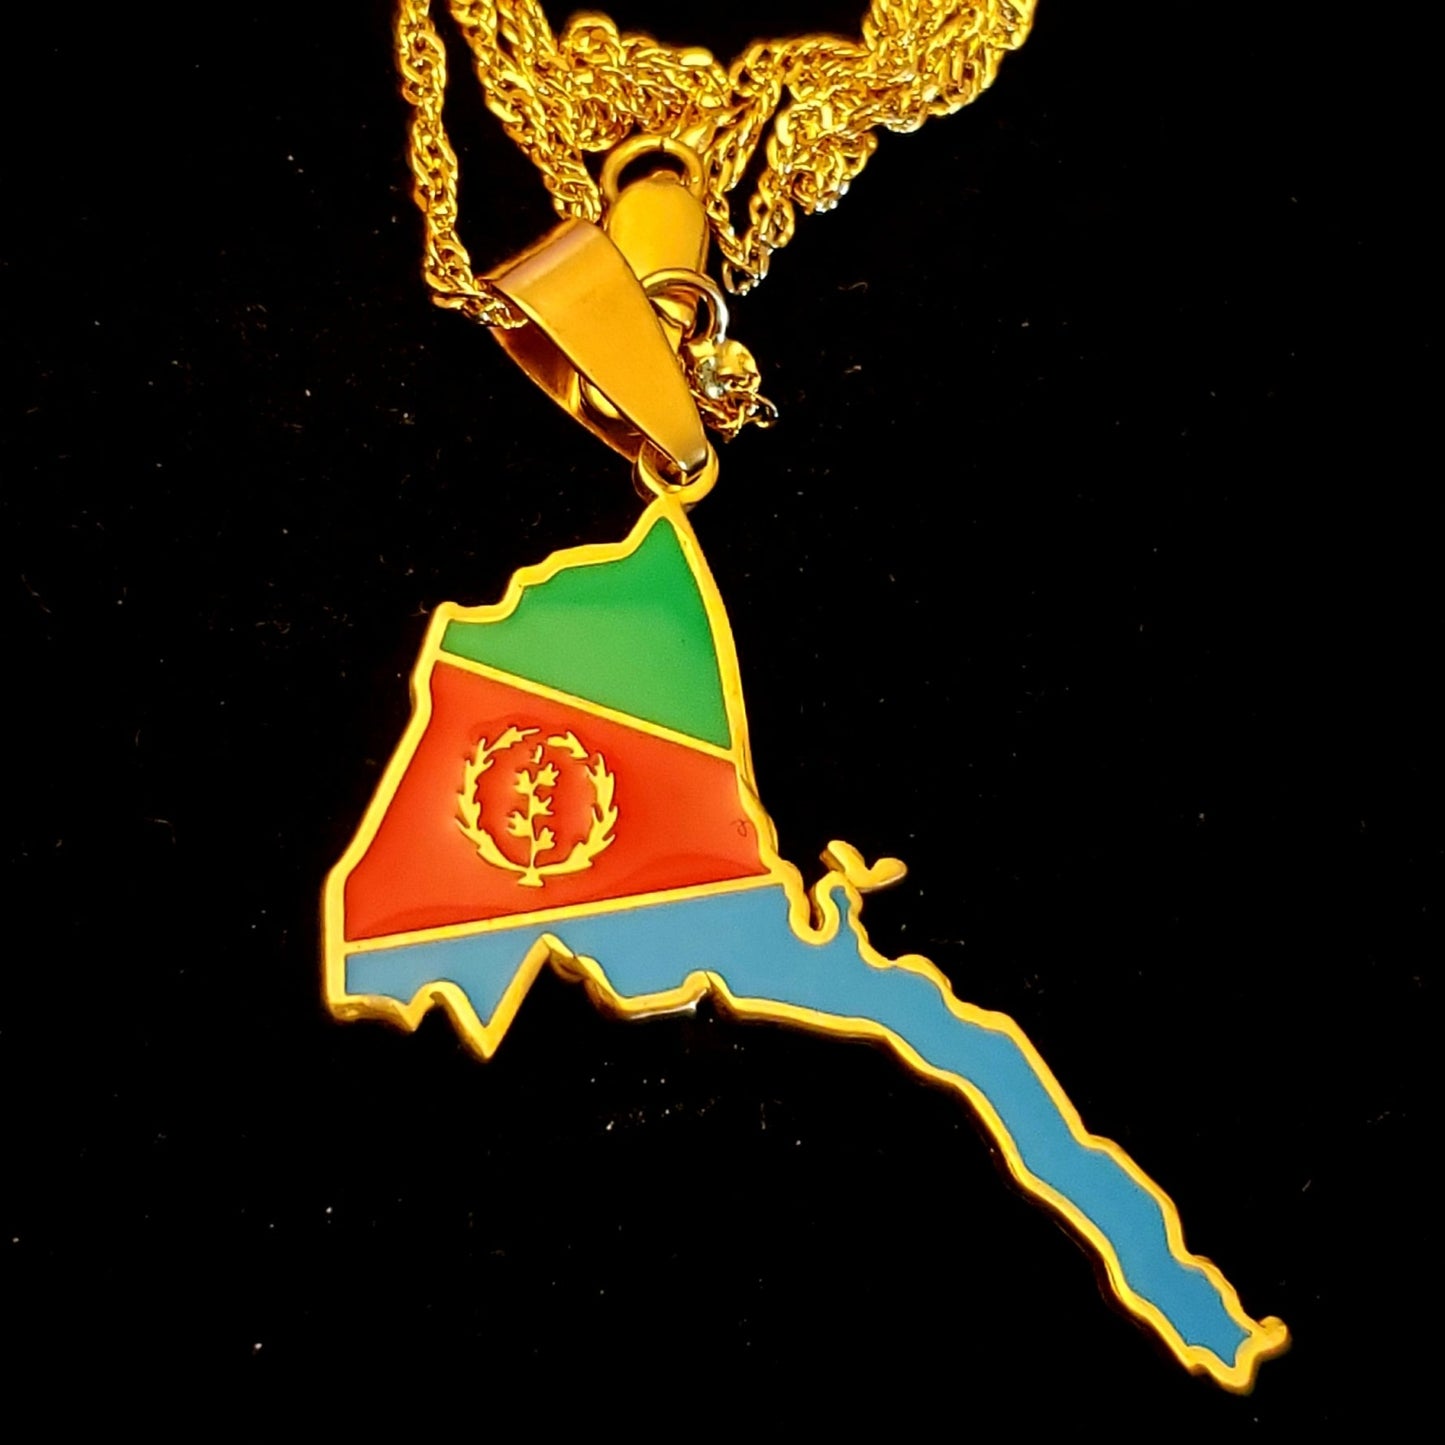 Eritrea map necklace